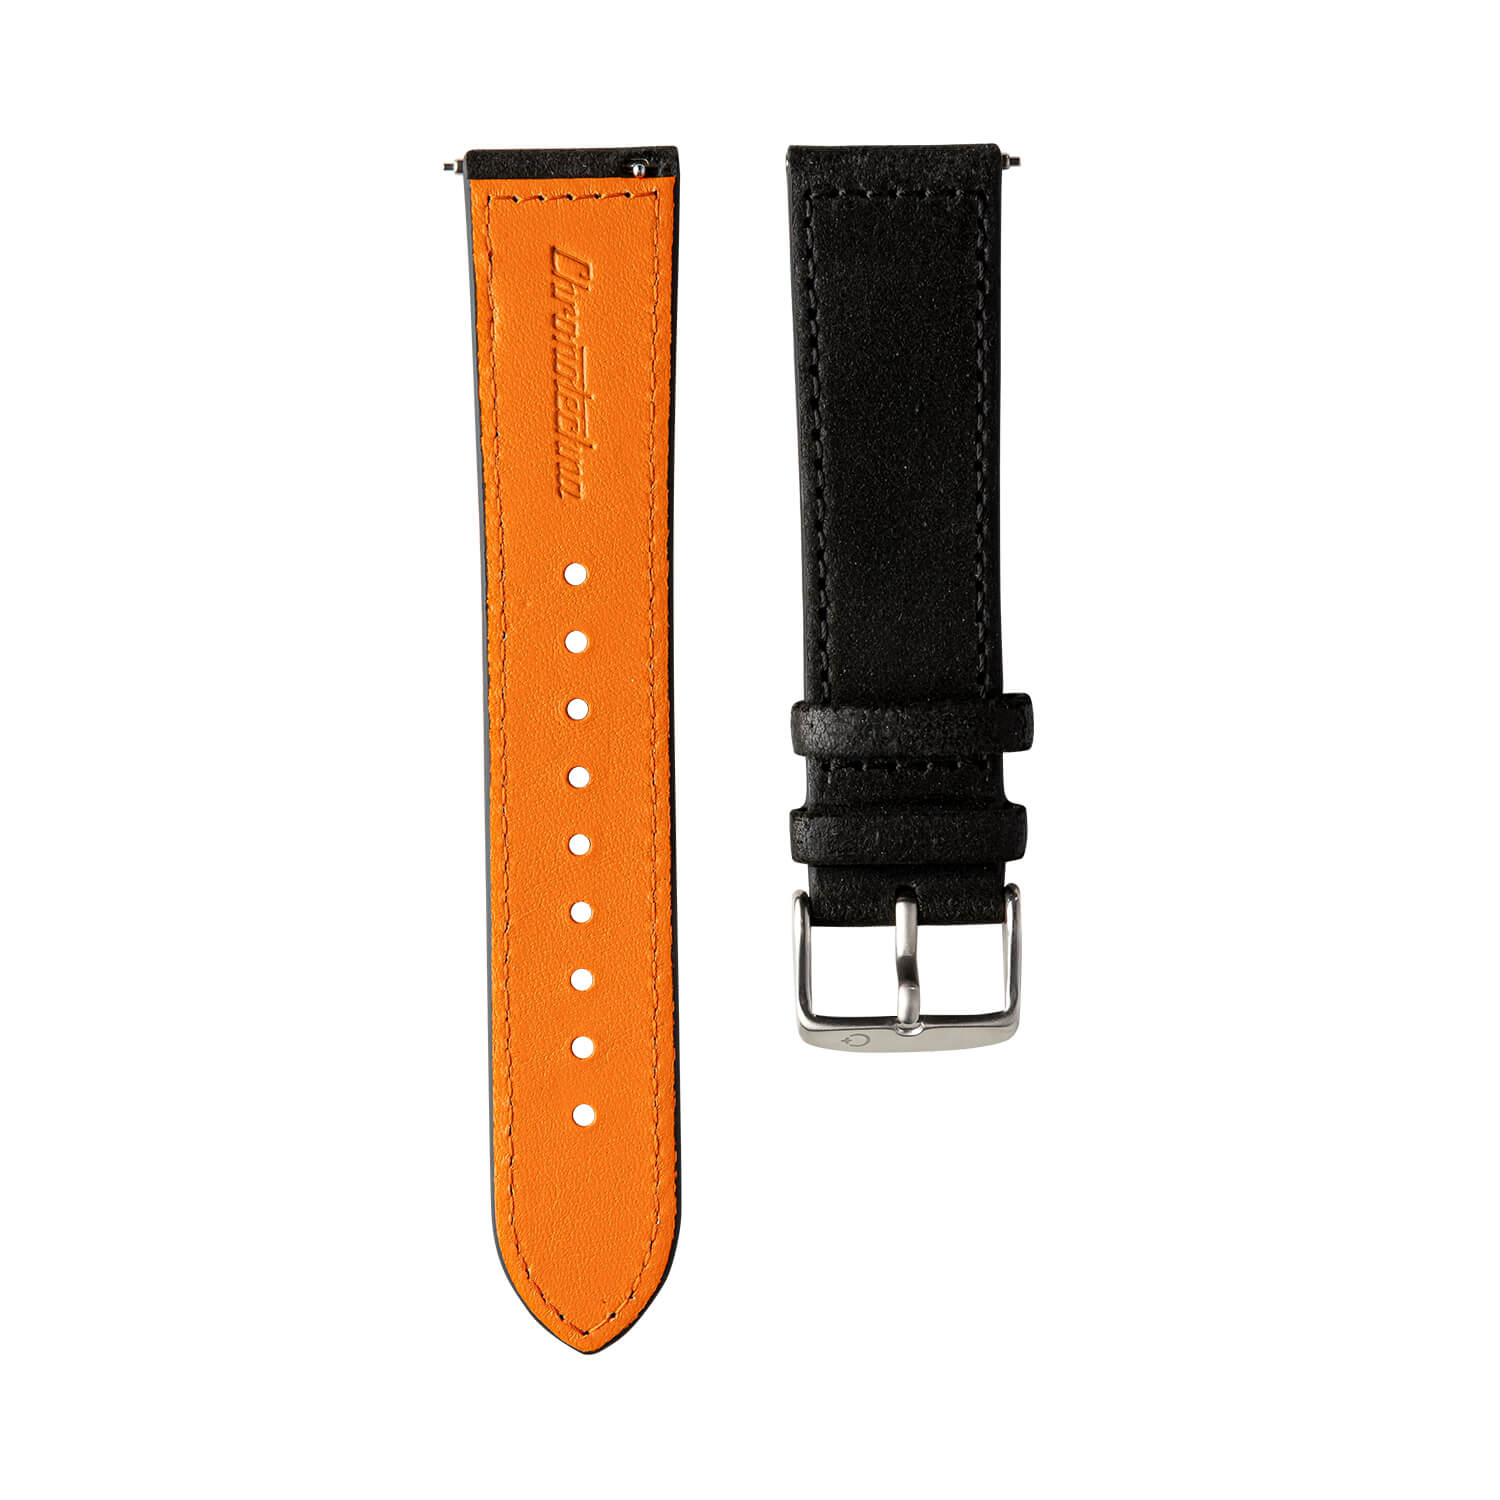 Černý kožený řemínek Chronotechna, oranžová spodní vrstva, hodinky NanoBlack, ocelová přezka, 22mm